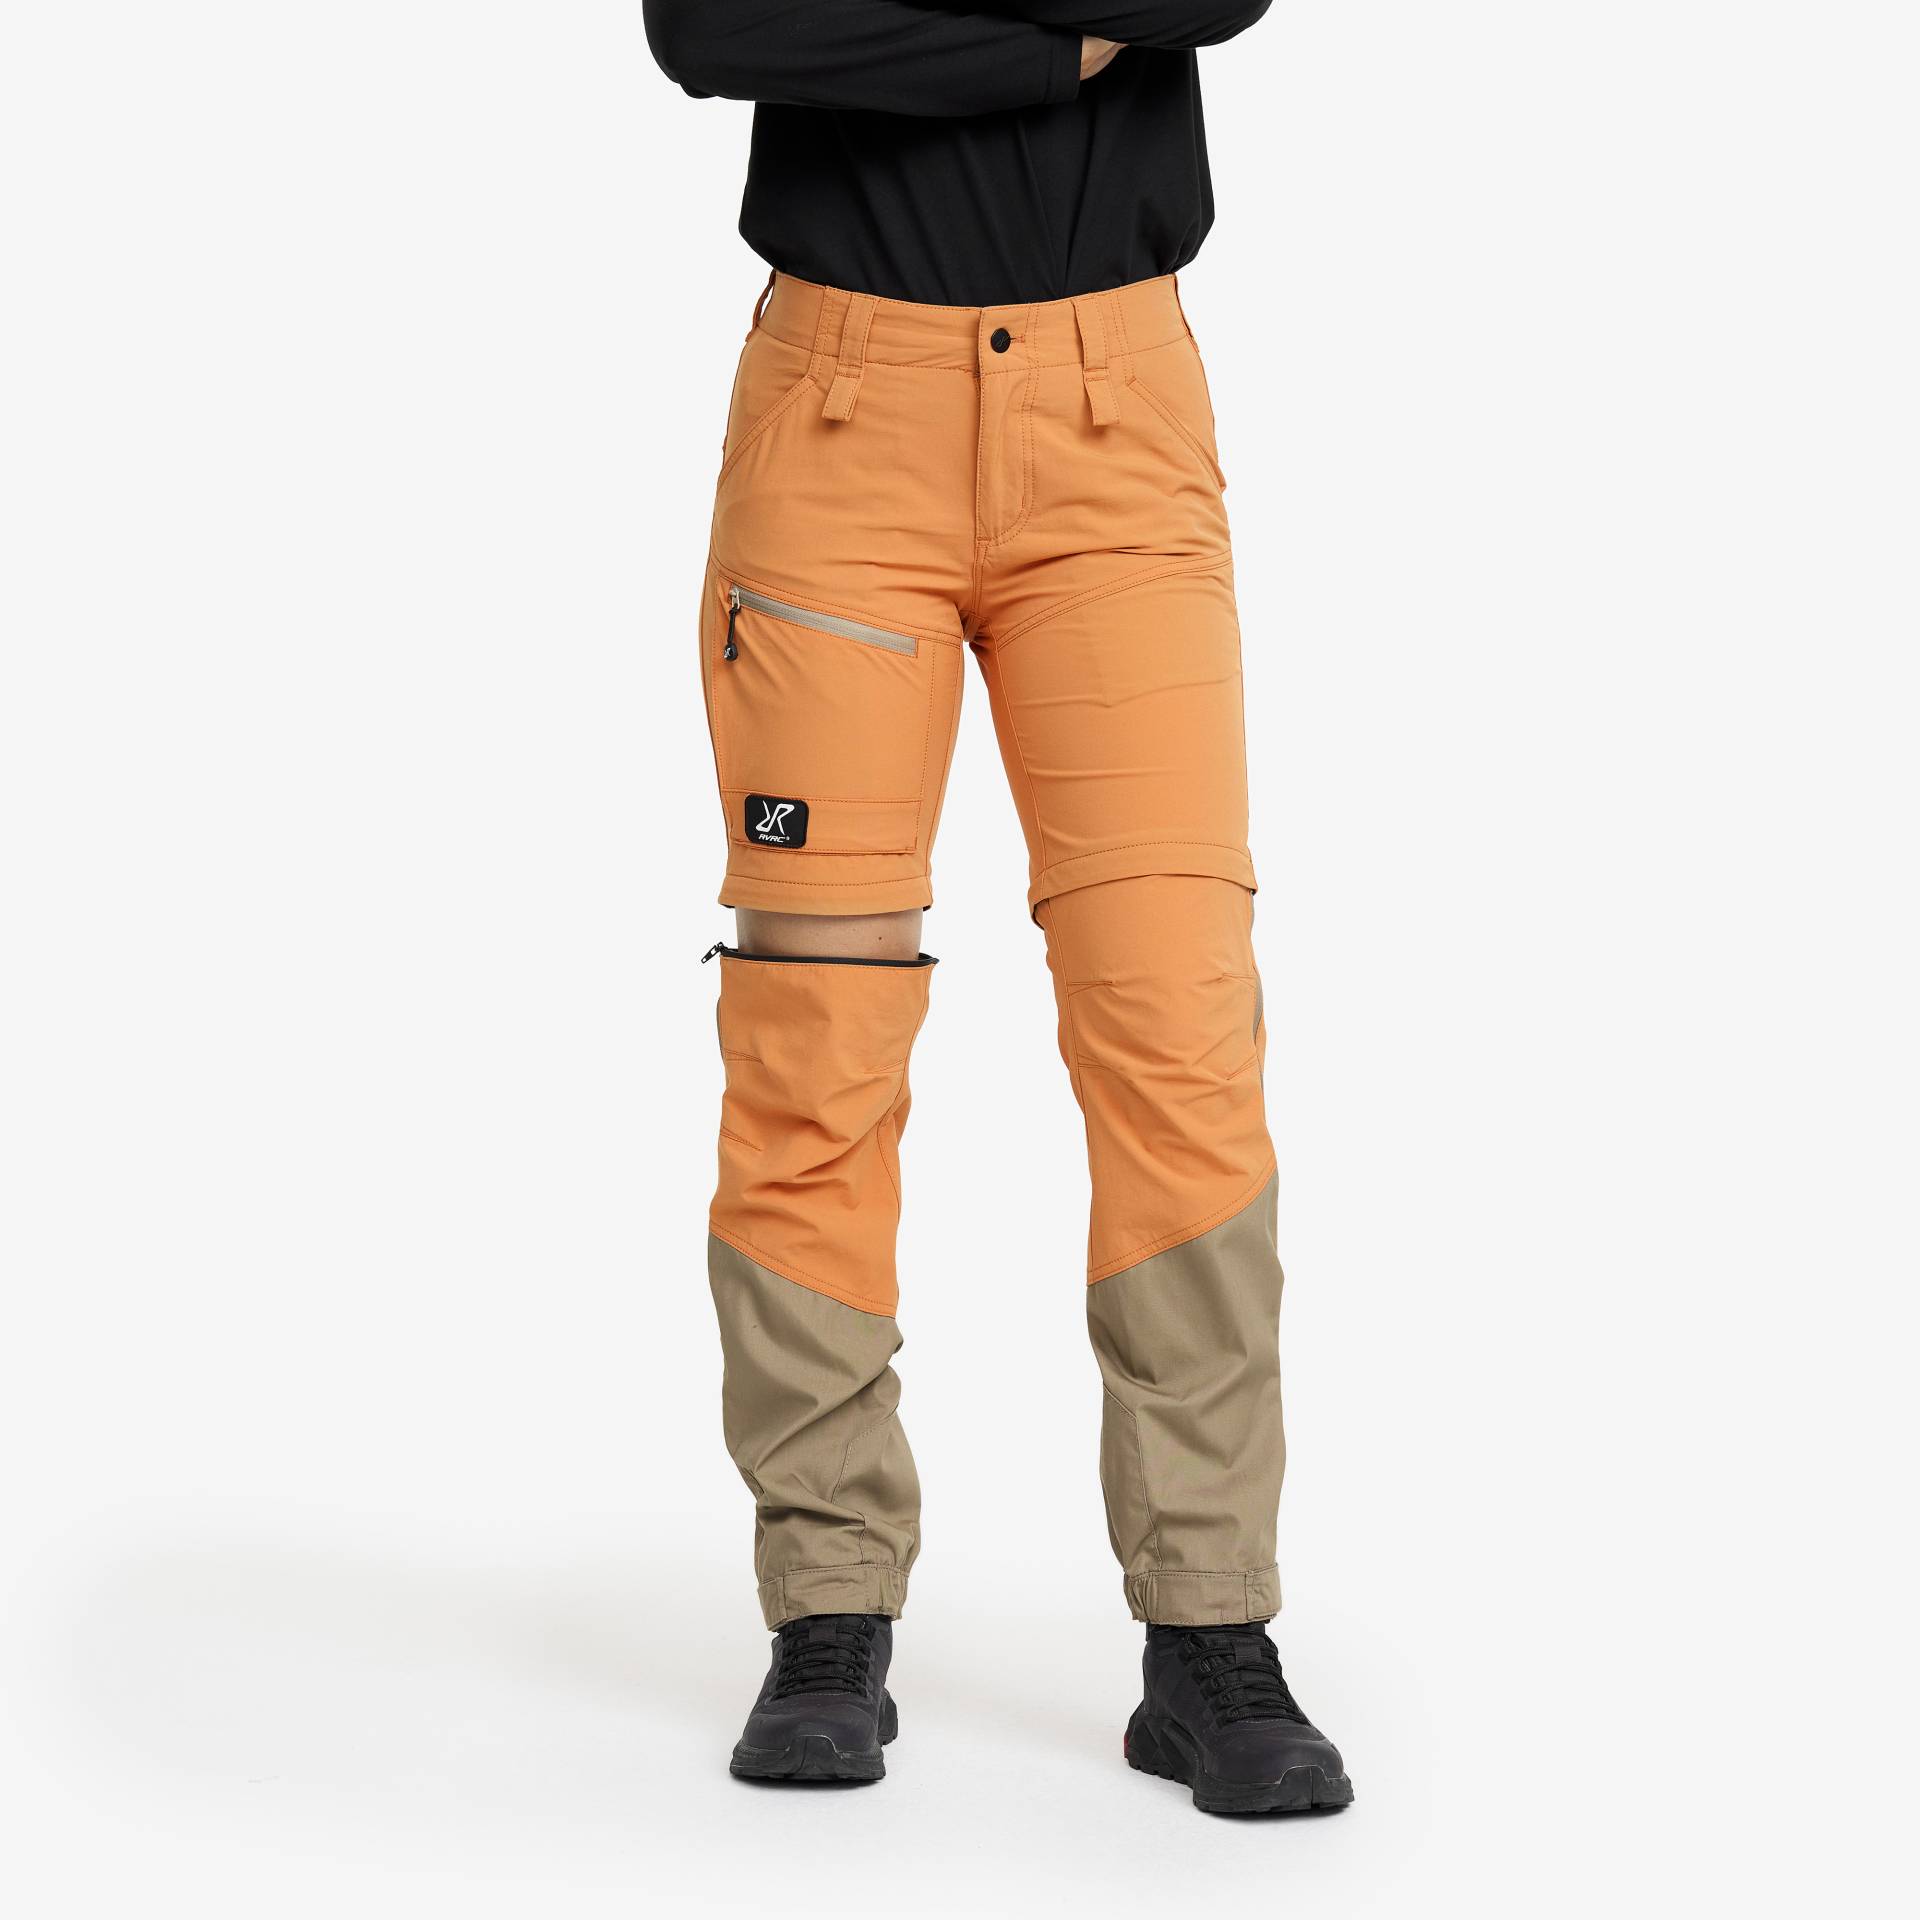 Range Pro Zip-off Pants Damen Caramel/Brindle, Größe:S - Zip-off-hosen von RevolutionRace